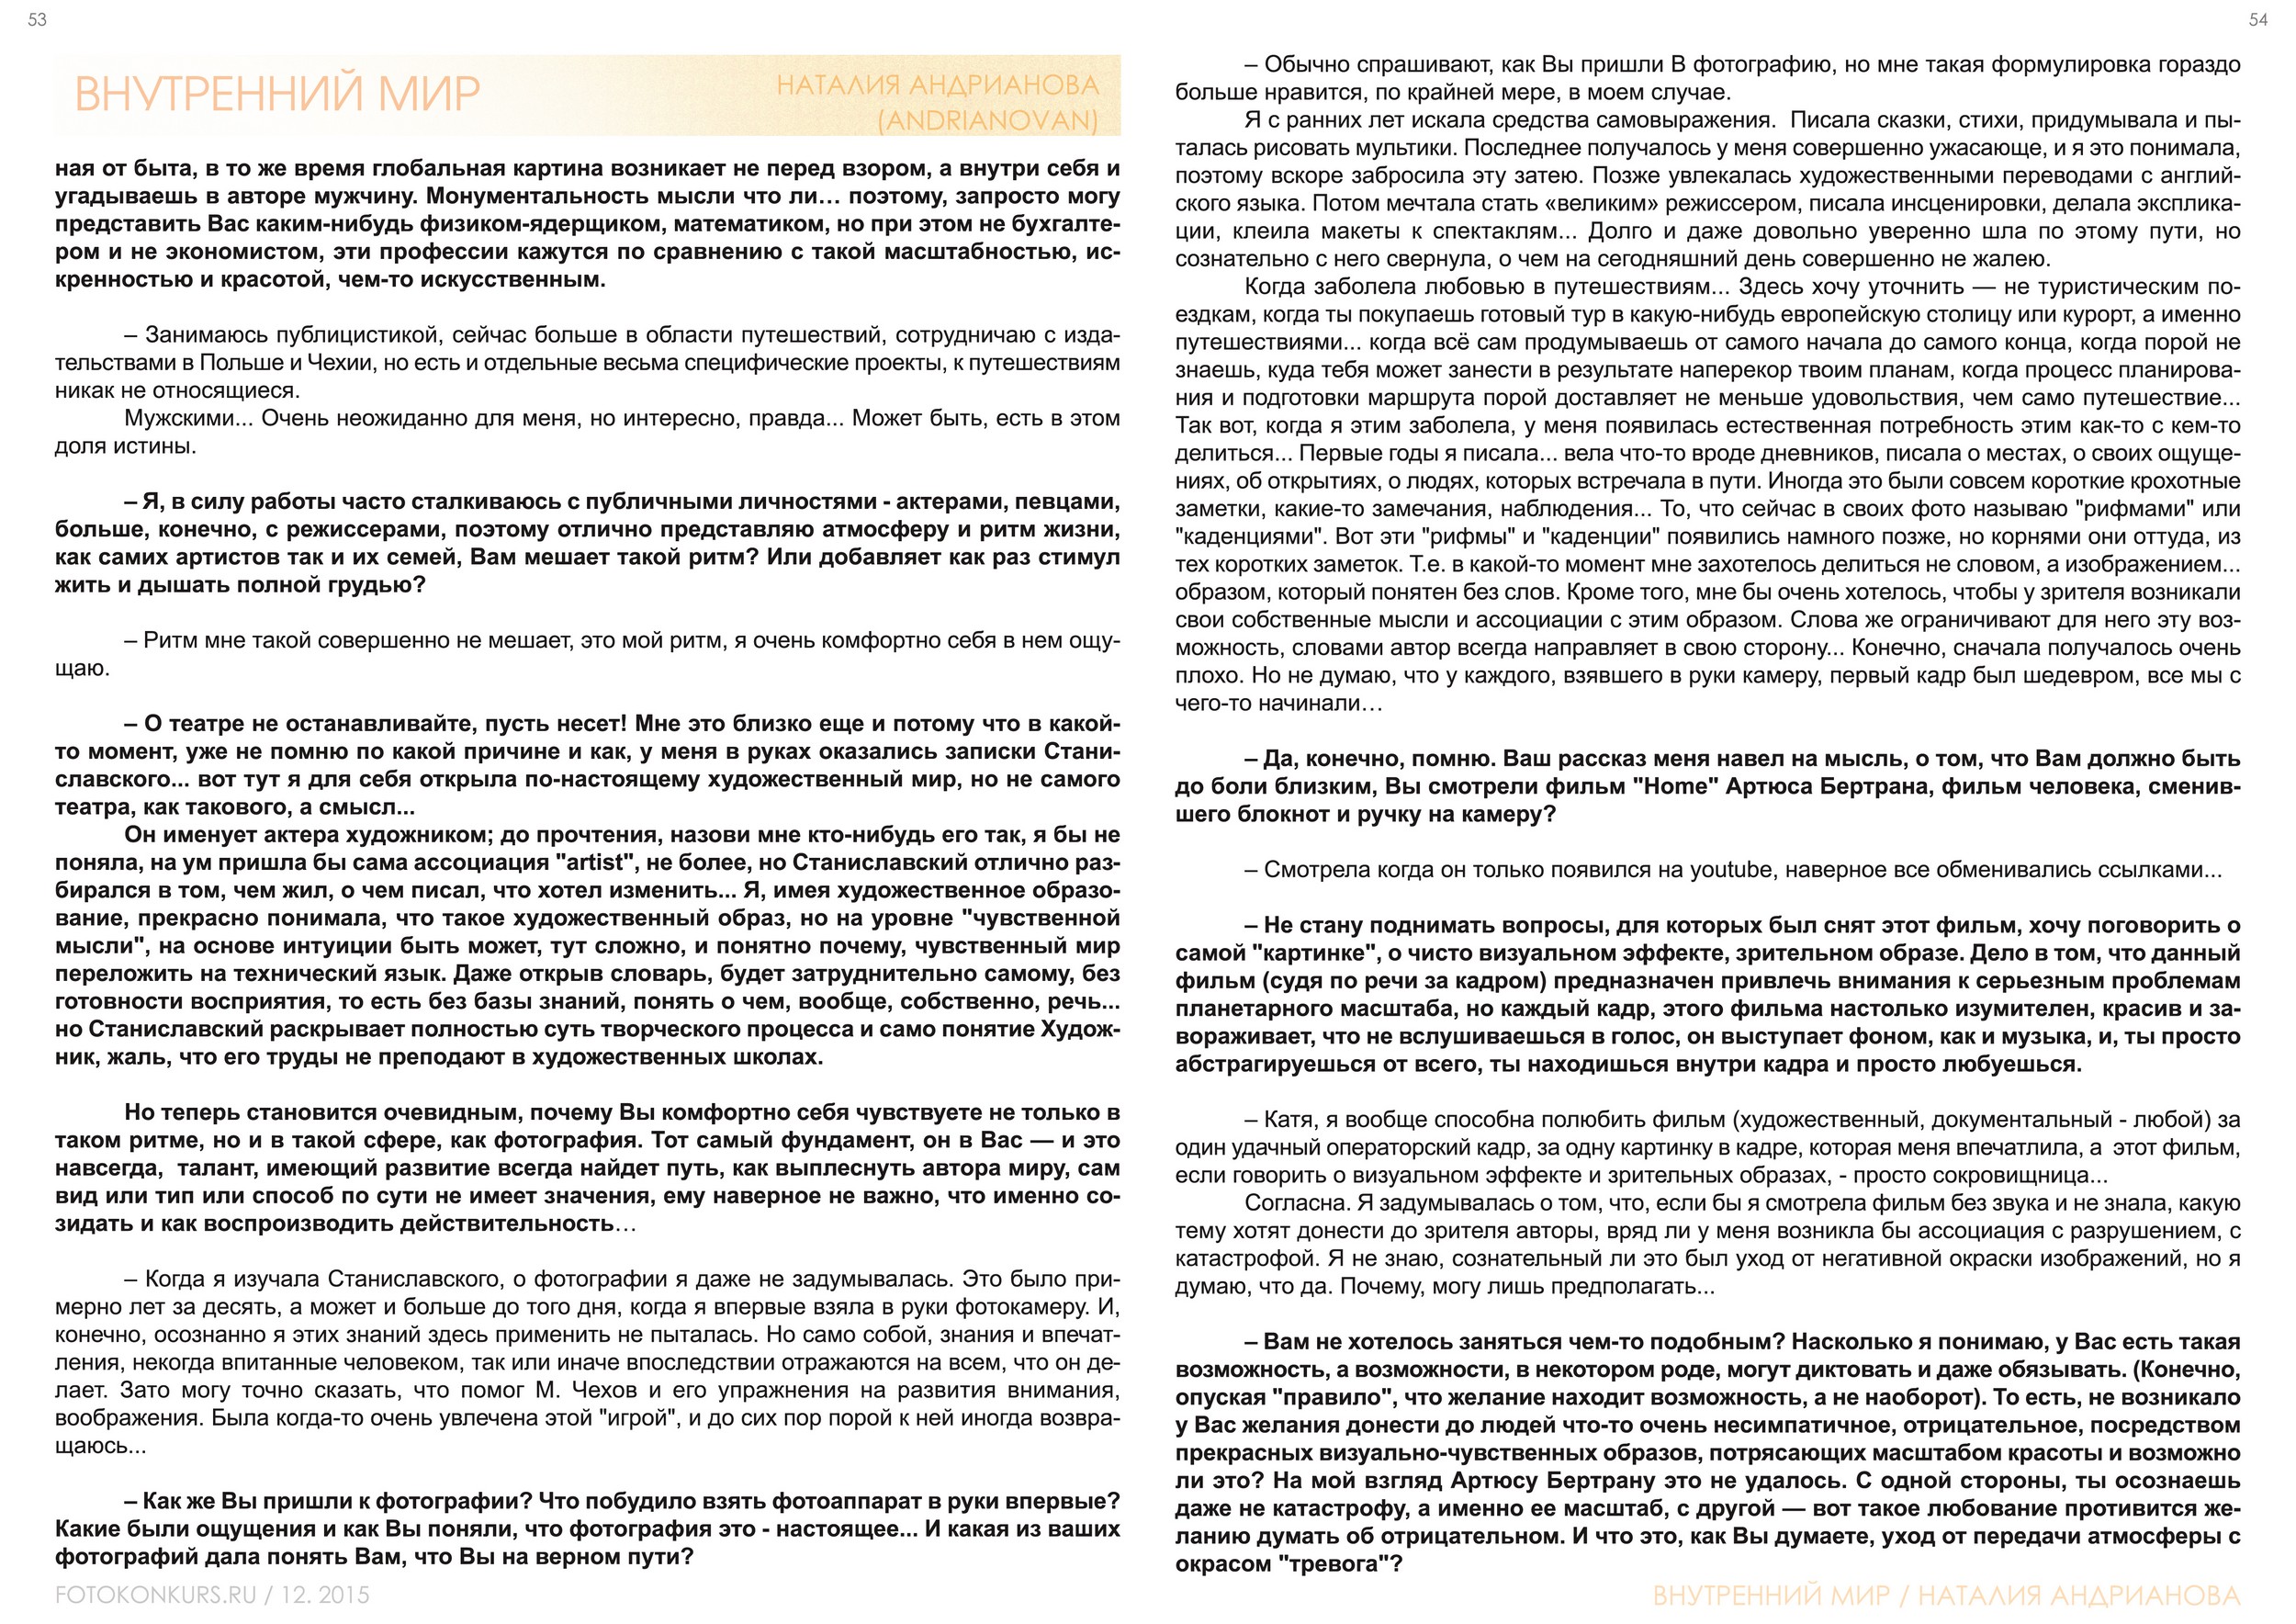 Журнал Фотоконкурс.ру, Выпуск 2, декабрь-2015, страница 53-54